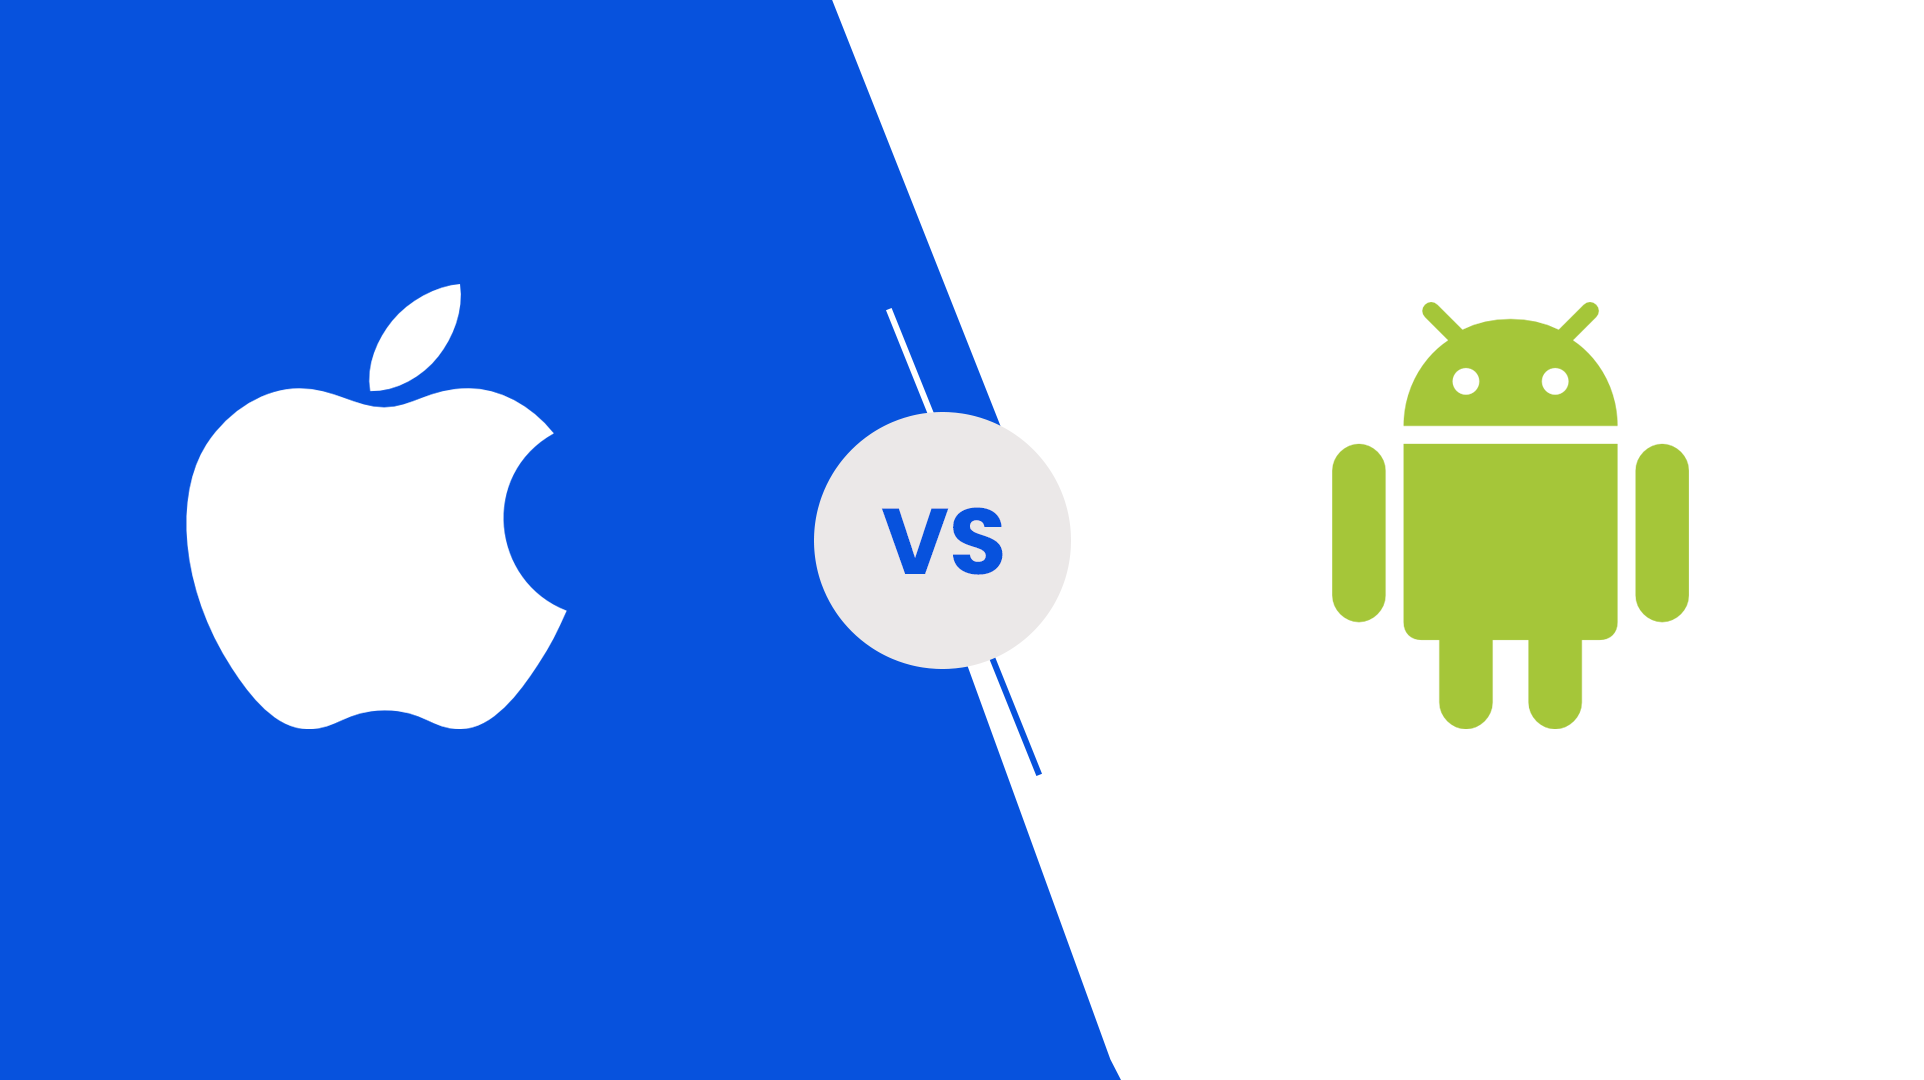 Android vs iOS app development